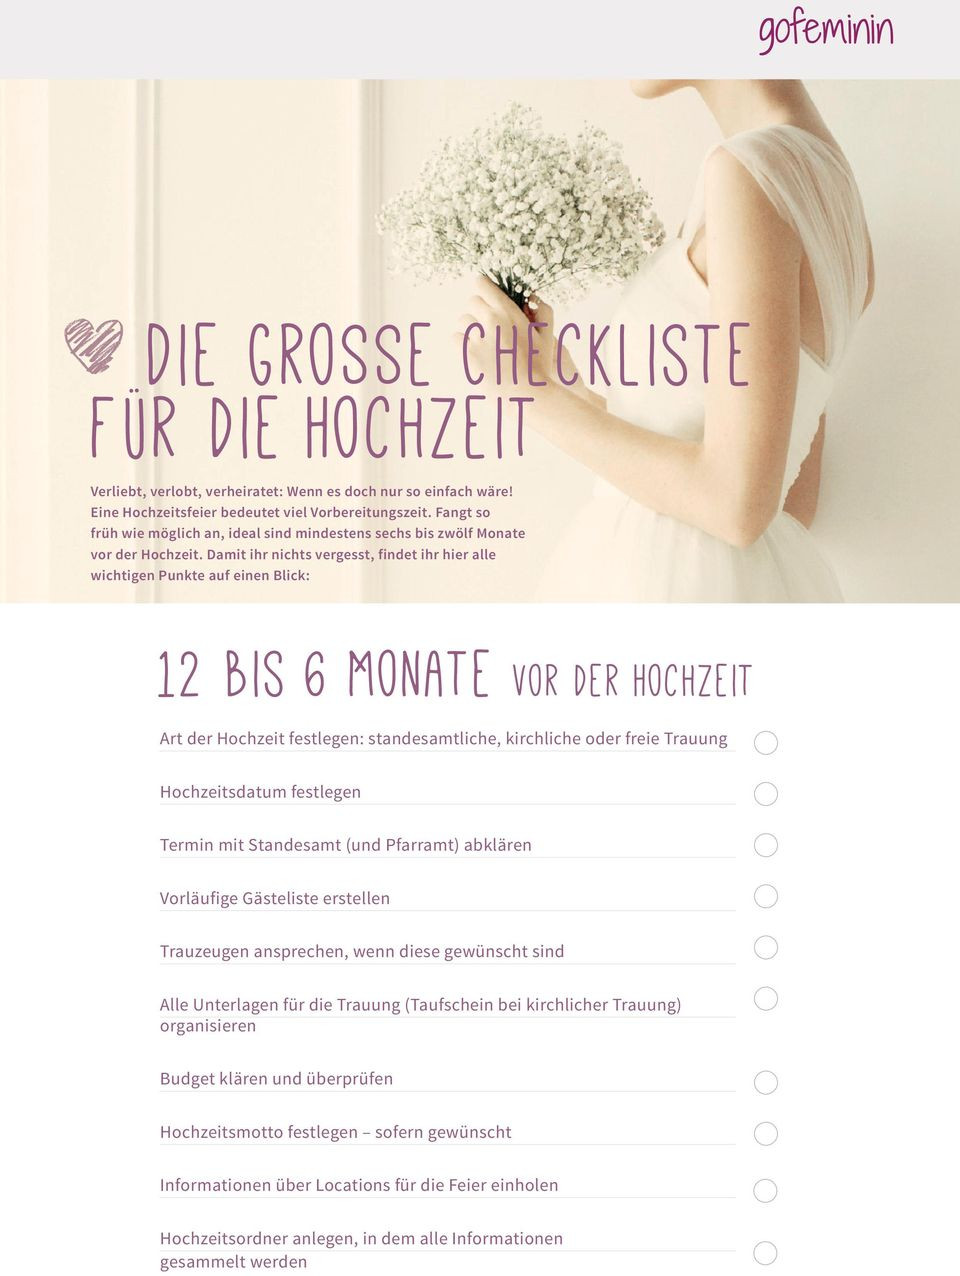 Checkliste Standesamtliche Hochzeit
 Die grosse Checkliste für Hochzeit PDF